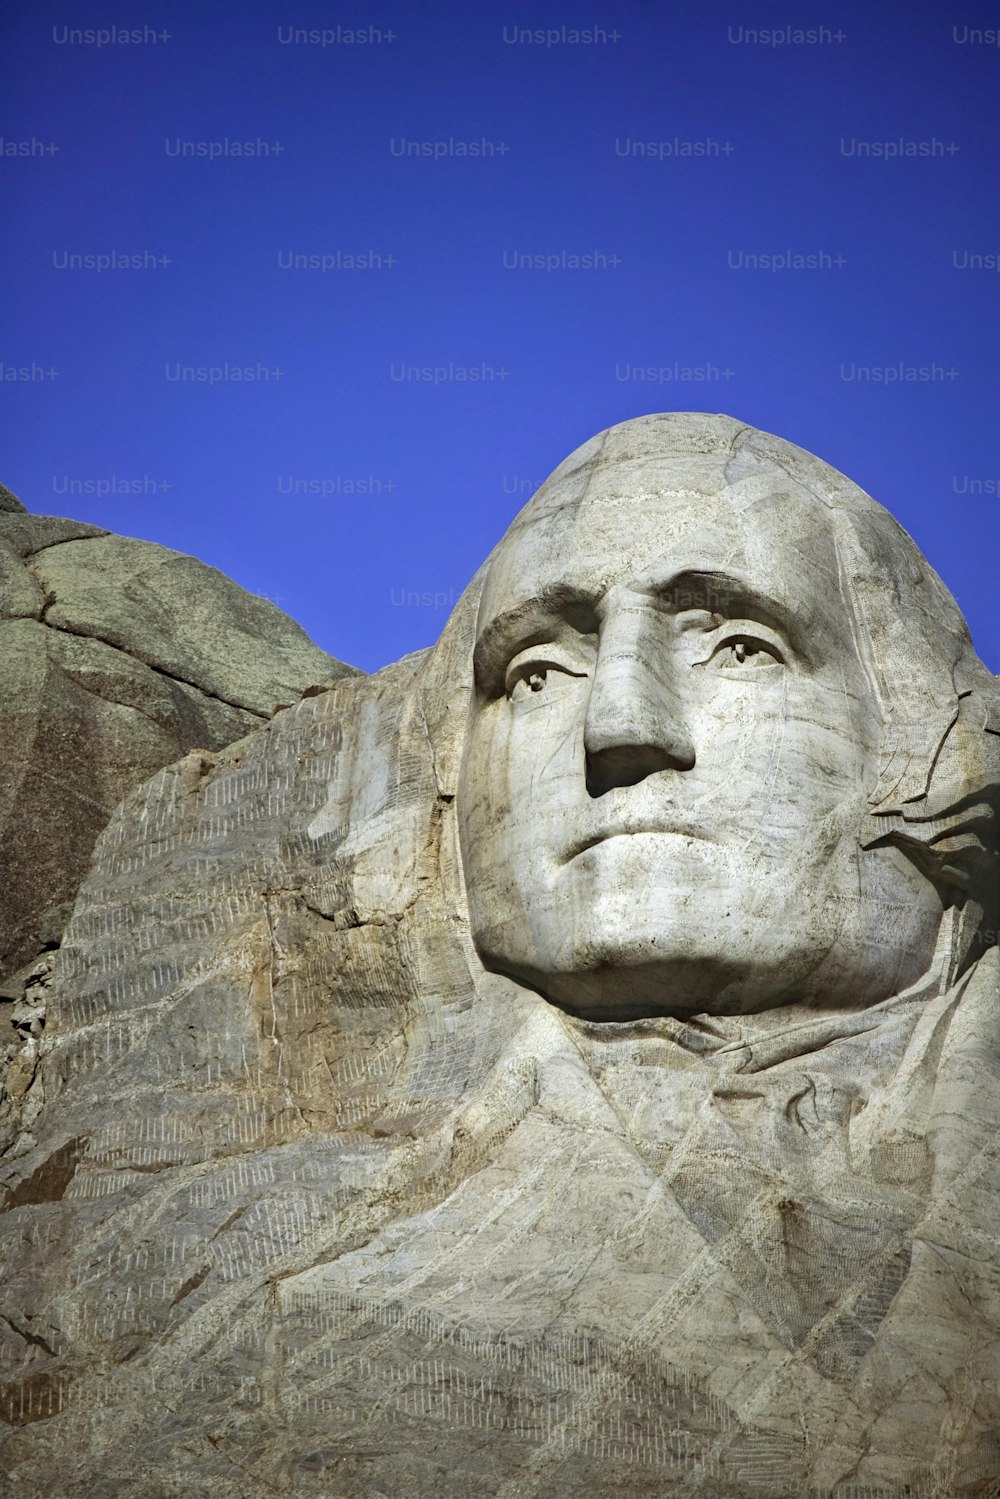 Le visage d’Abraham Lincoln sculpté dans le flanc d’une montagne